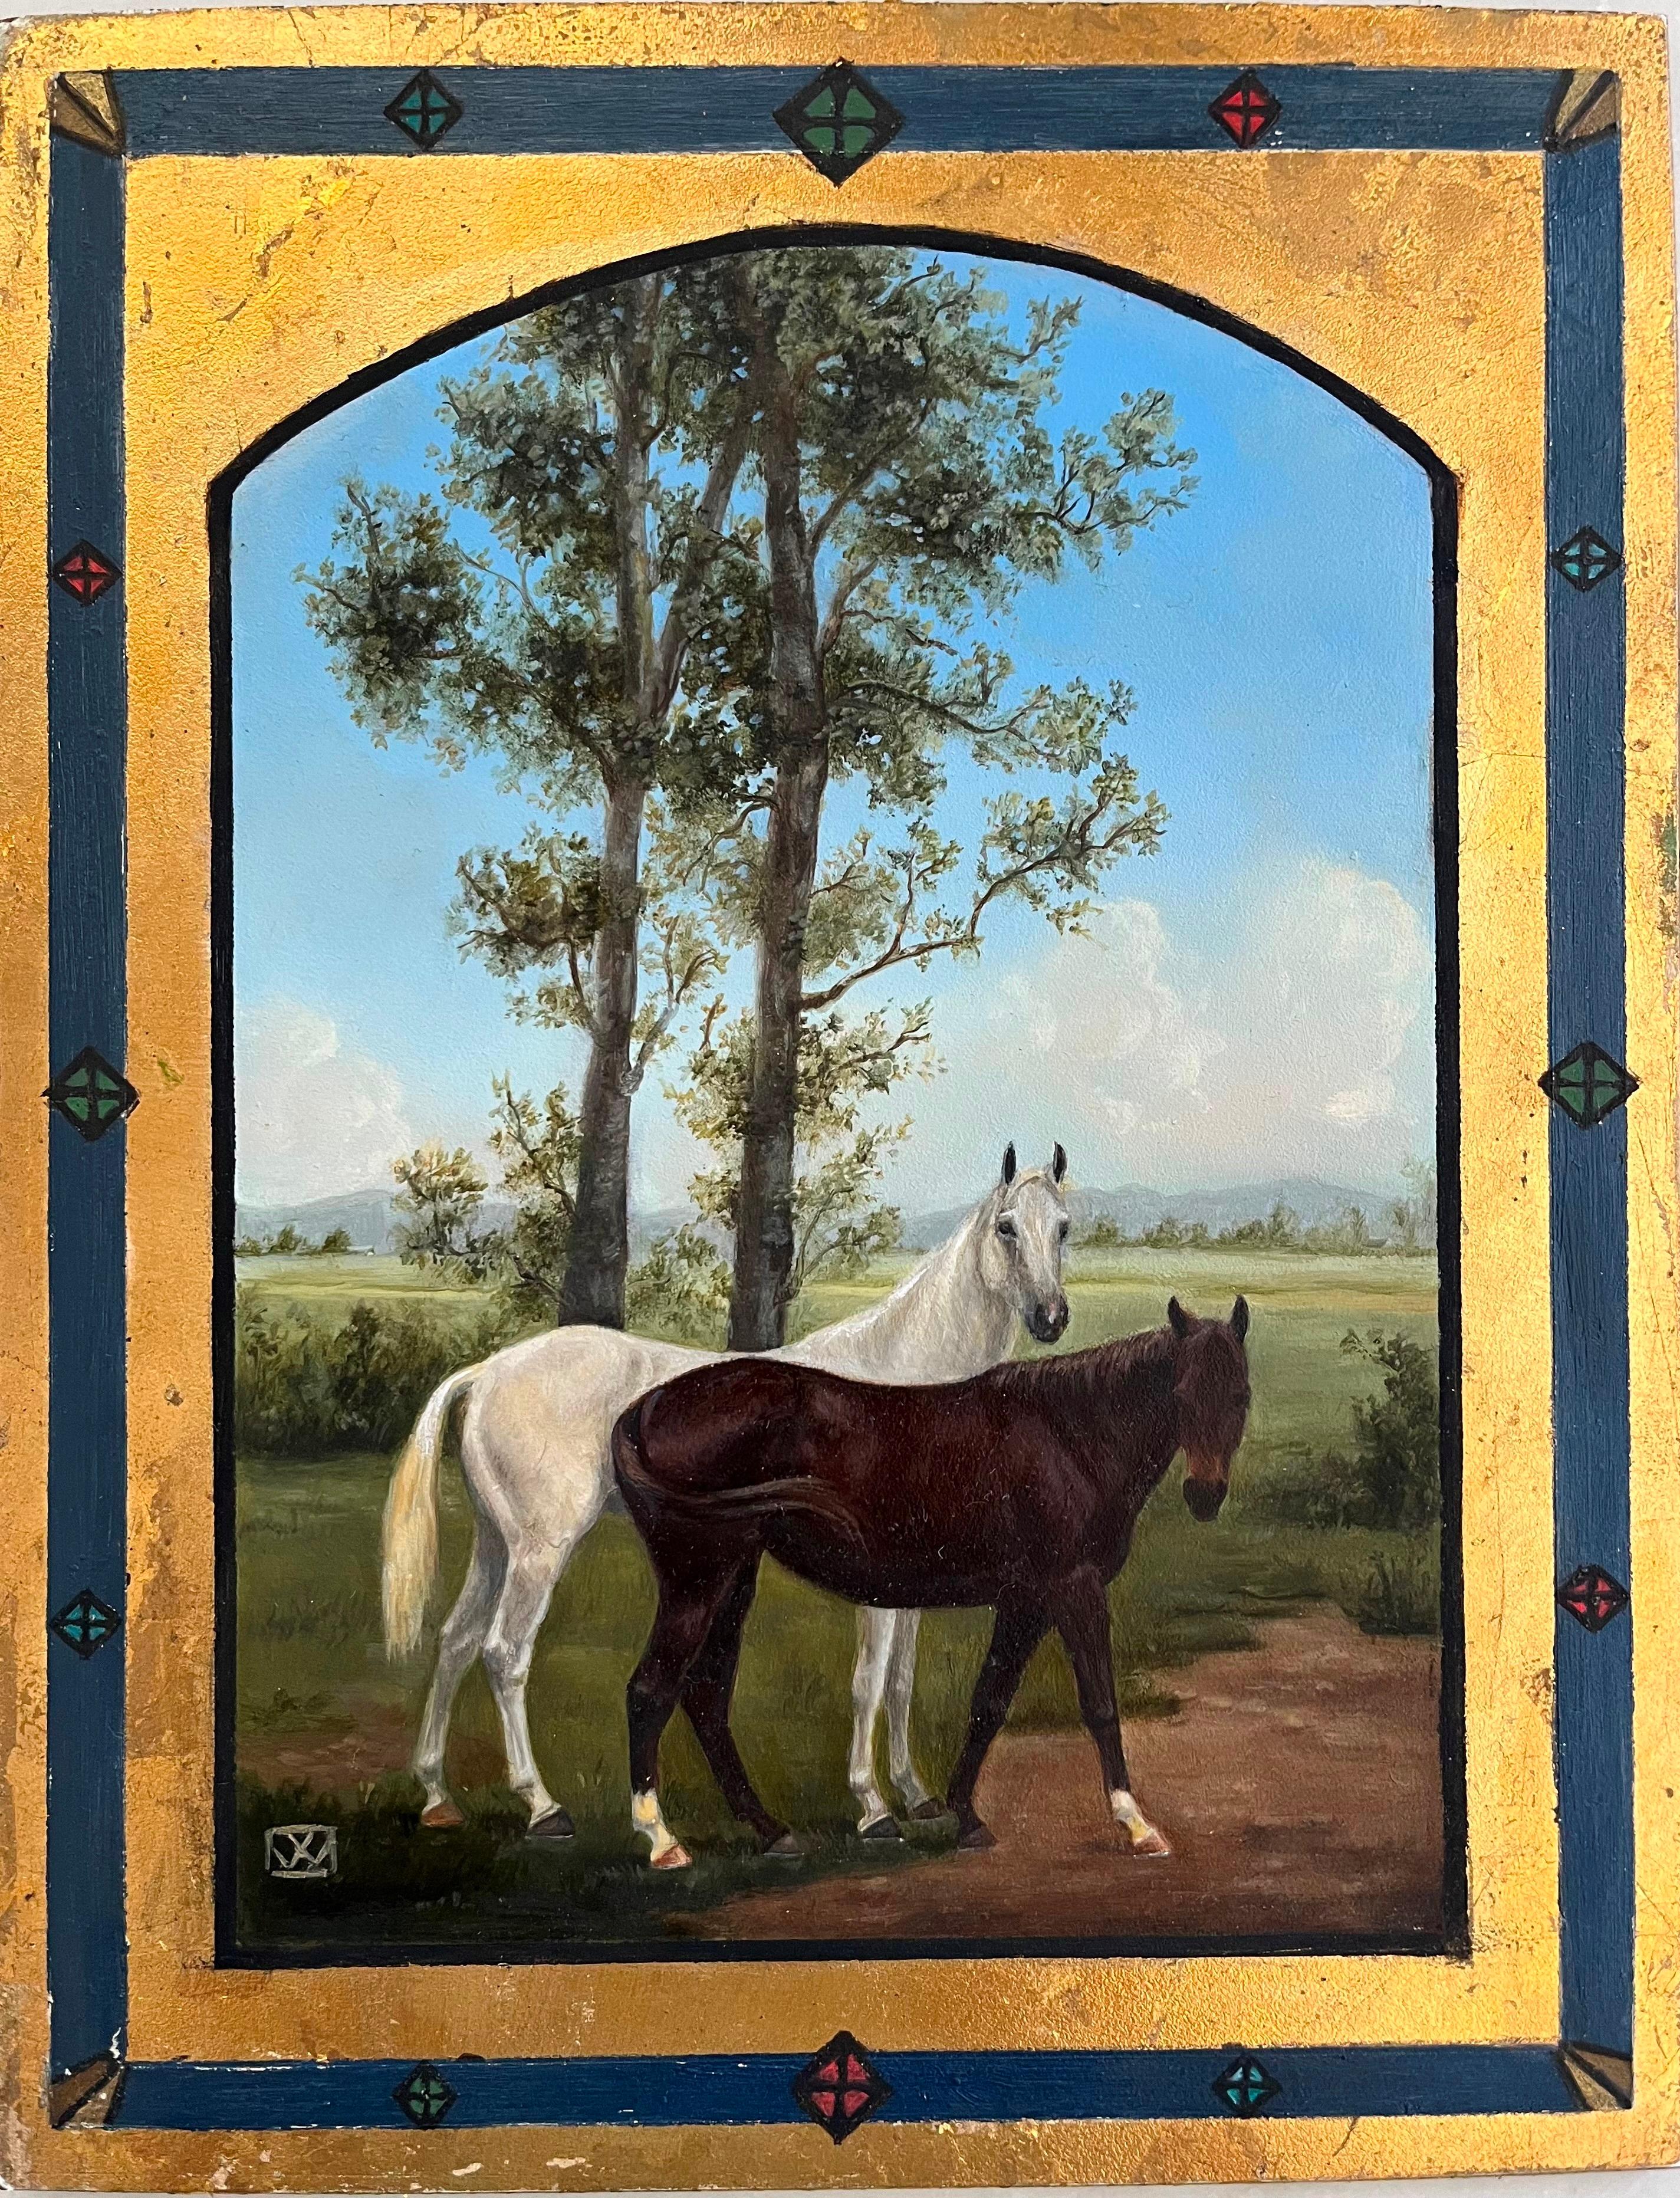 Valarie Wolf Landscape Painting – Bezauberndes, ikonisches Gemälde von Alert Horses in einer charmanten pastoralen Szene